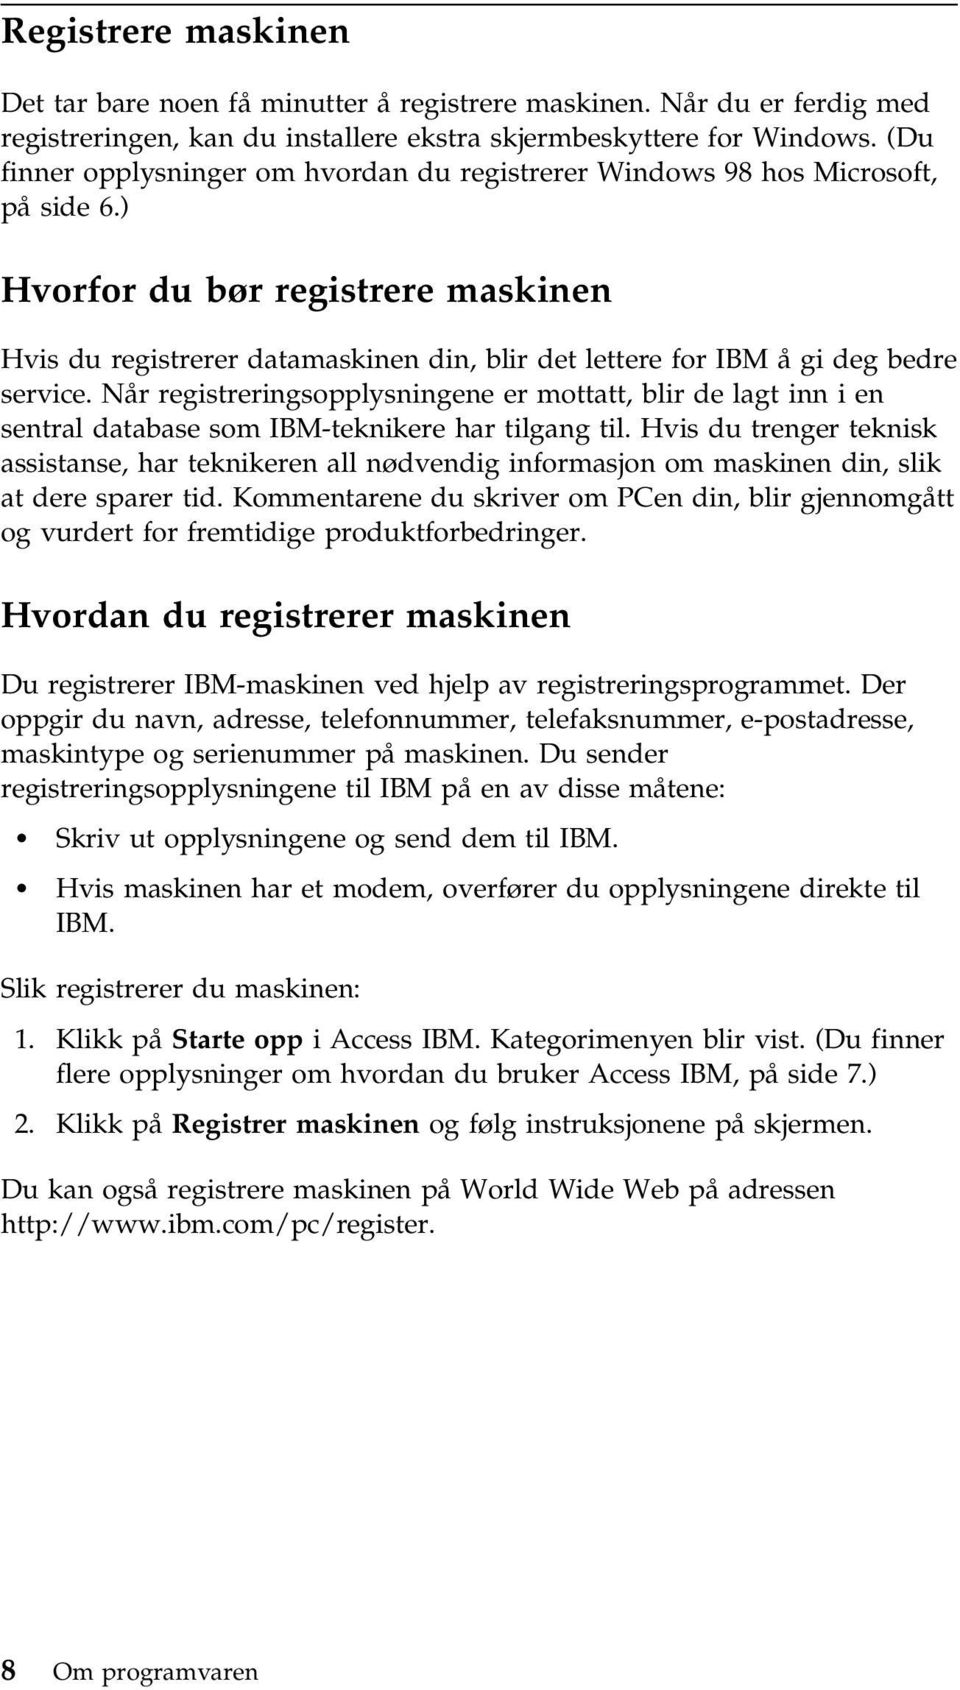 ) Hvorfor du bør registrere maskinen Hvis du registrerer datamaskinen din, blir det lettere for IBM å gi deg bedre service.